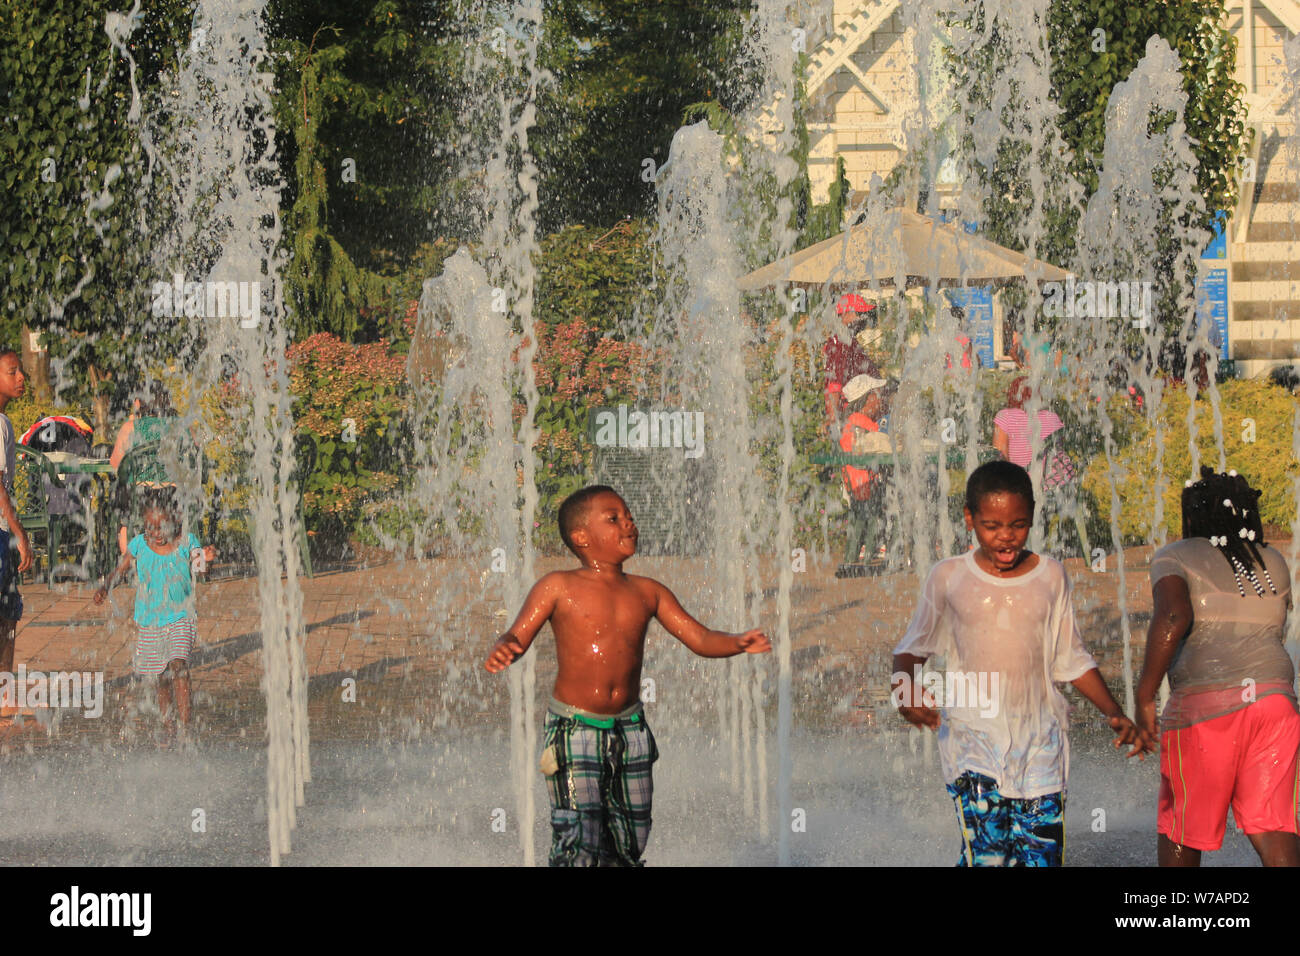 Les enfants bénéficiant des fontaines interactives dans l'heure d'été Banque D'Images